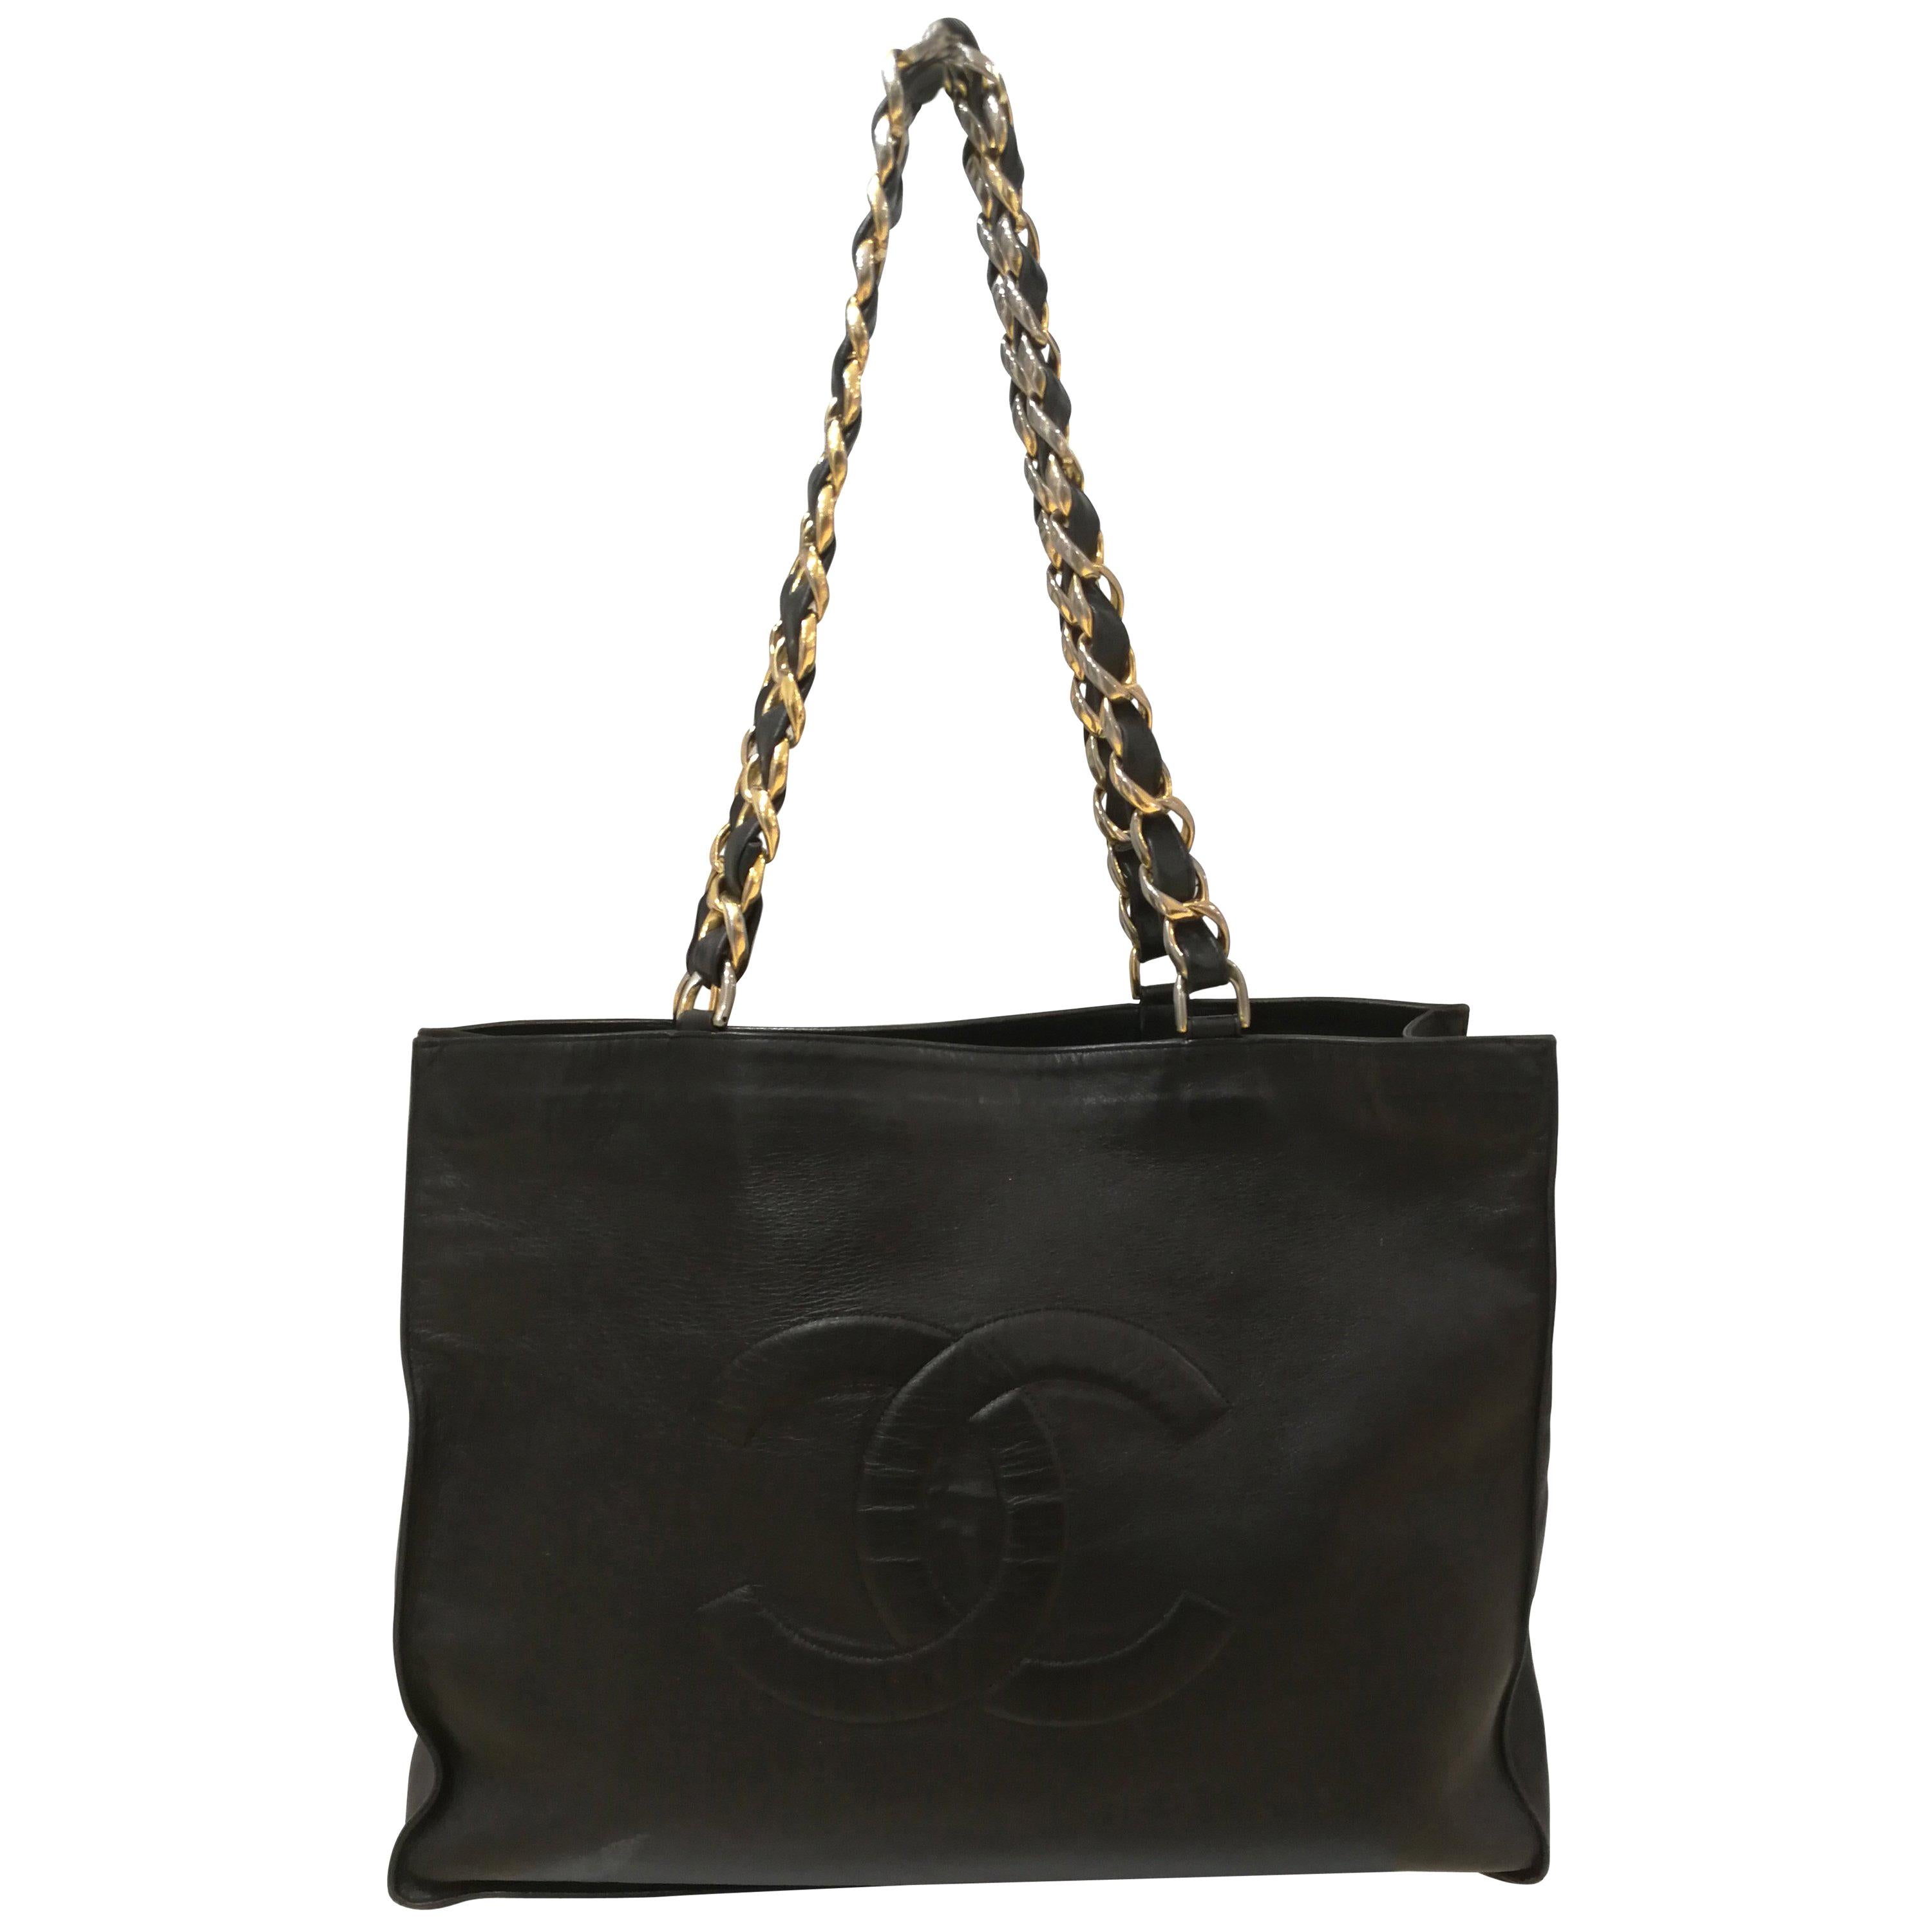 Chanel Black Leather Shopper Bag